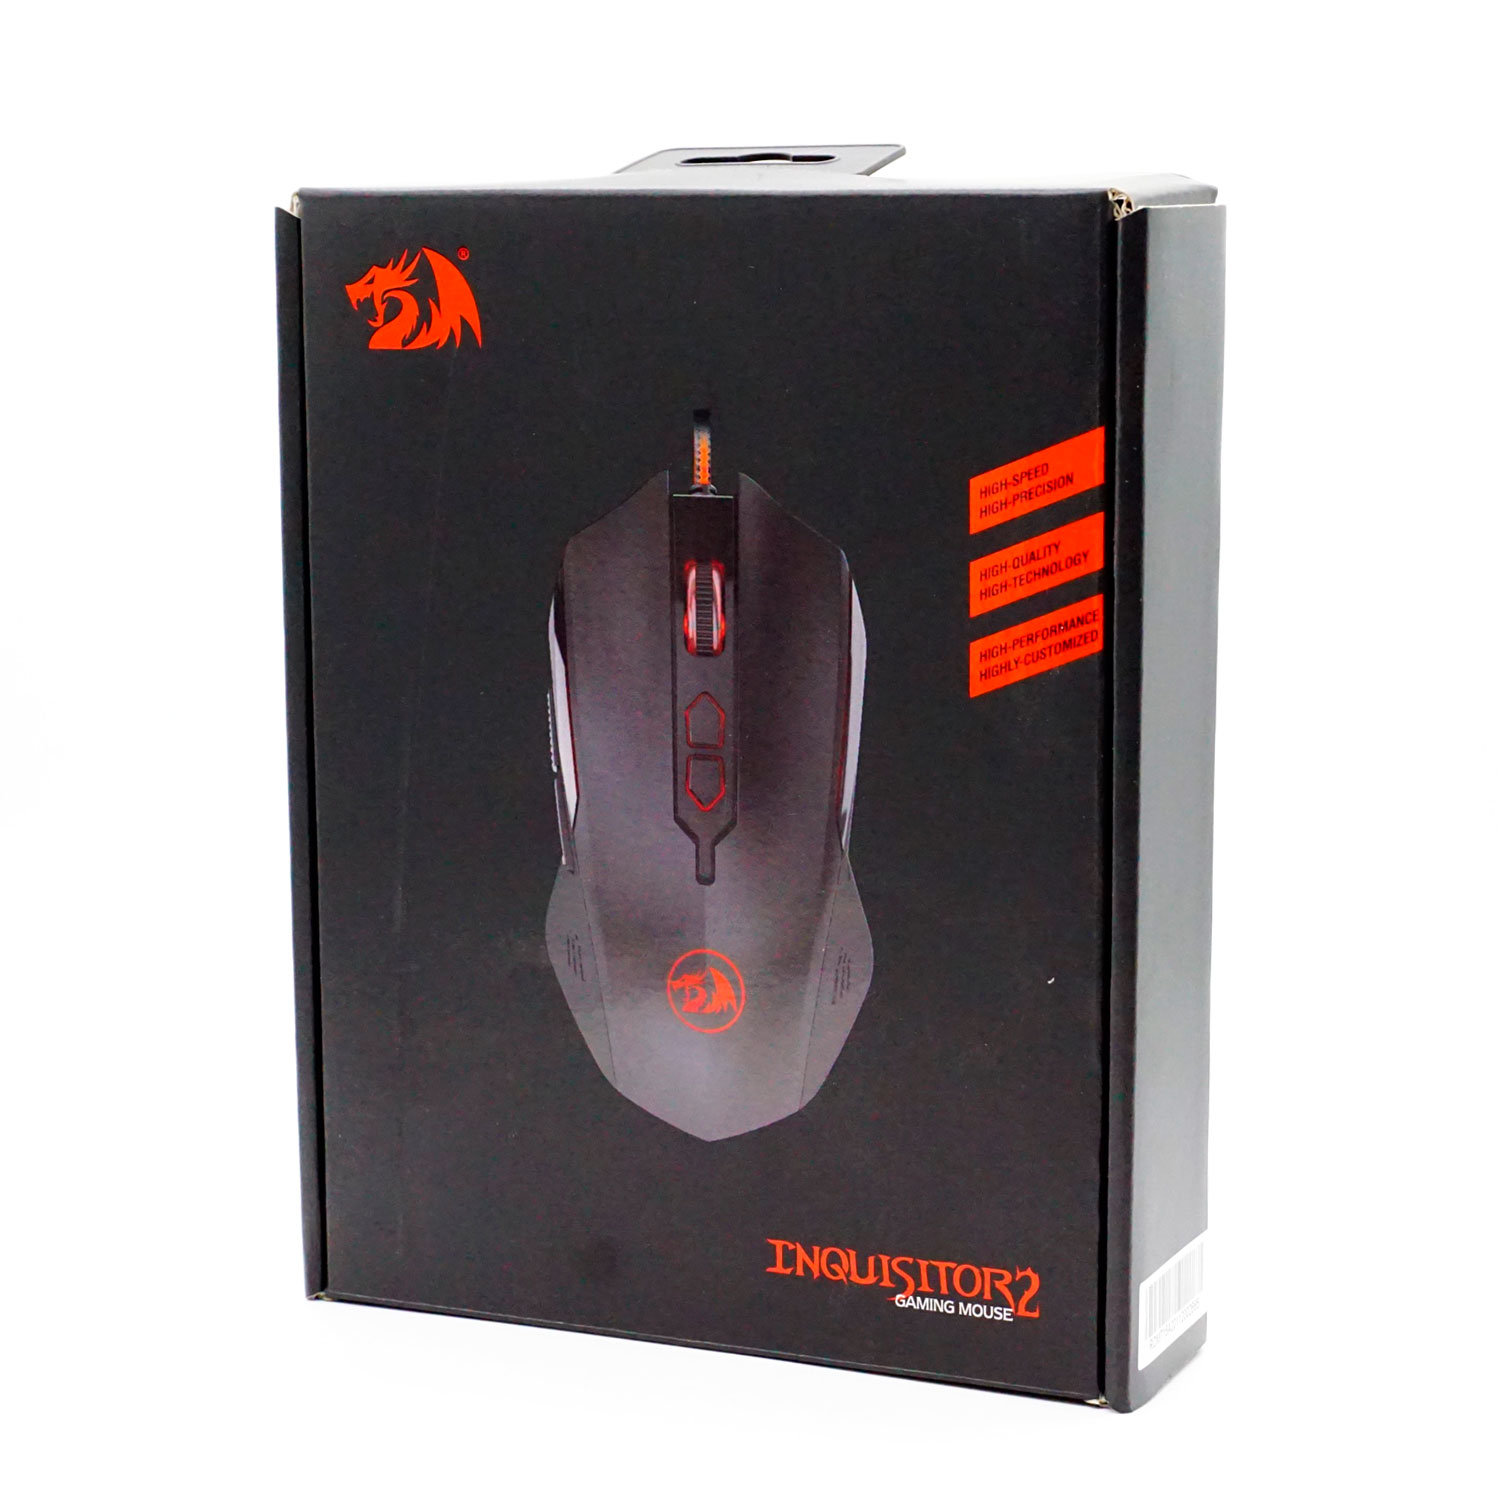 Mouse Gamer Redragon Inquisitor 2 RGB M716A / 7200 DPI - Preto